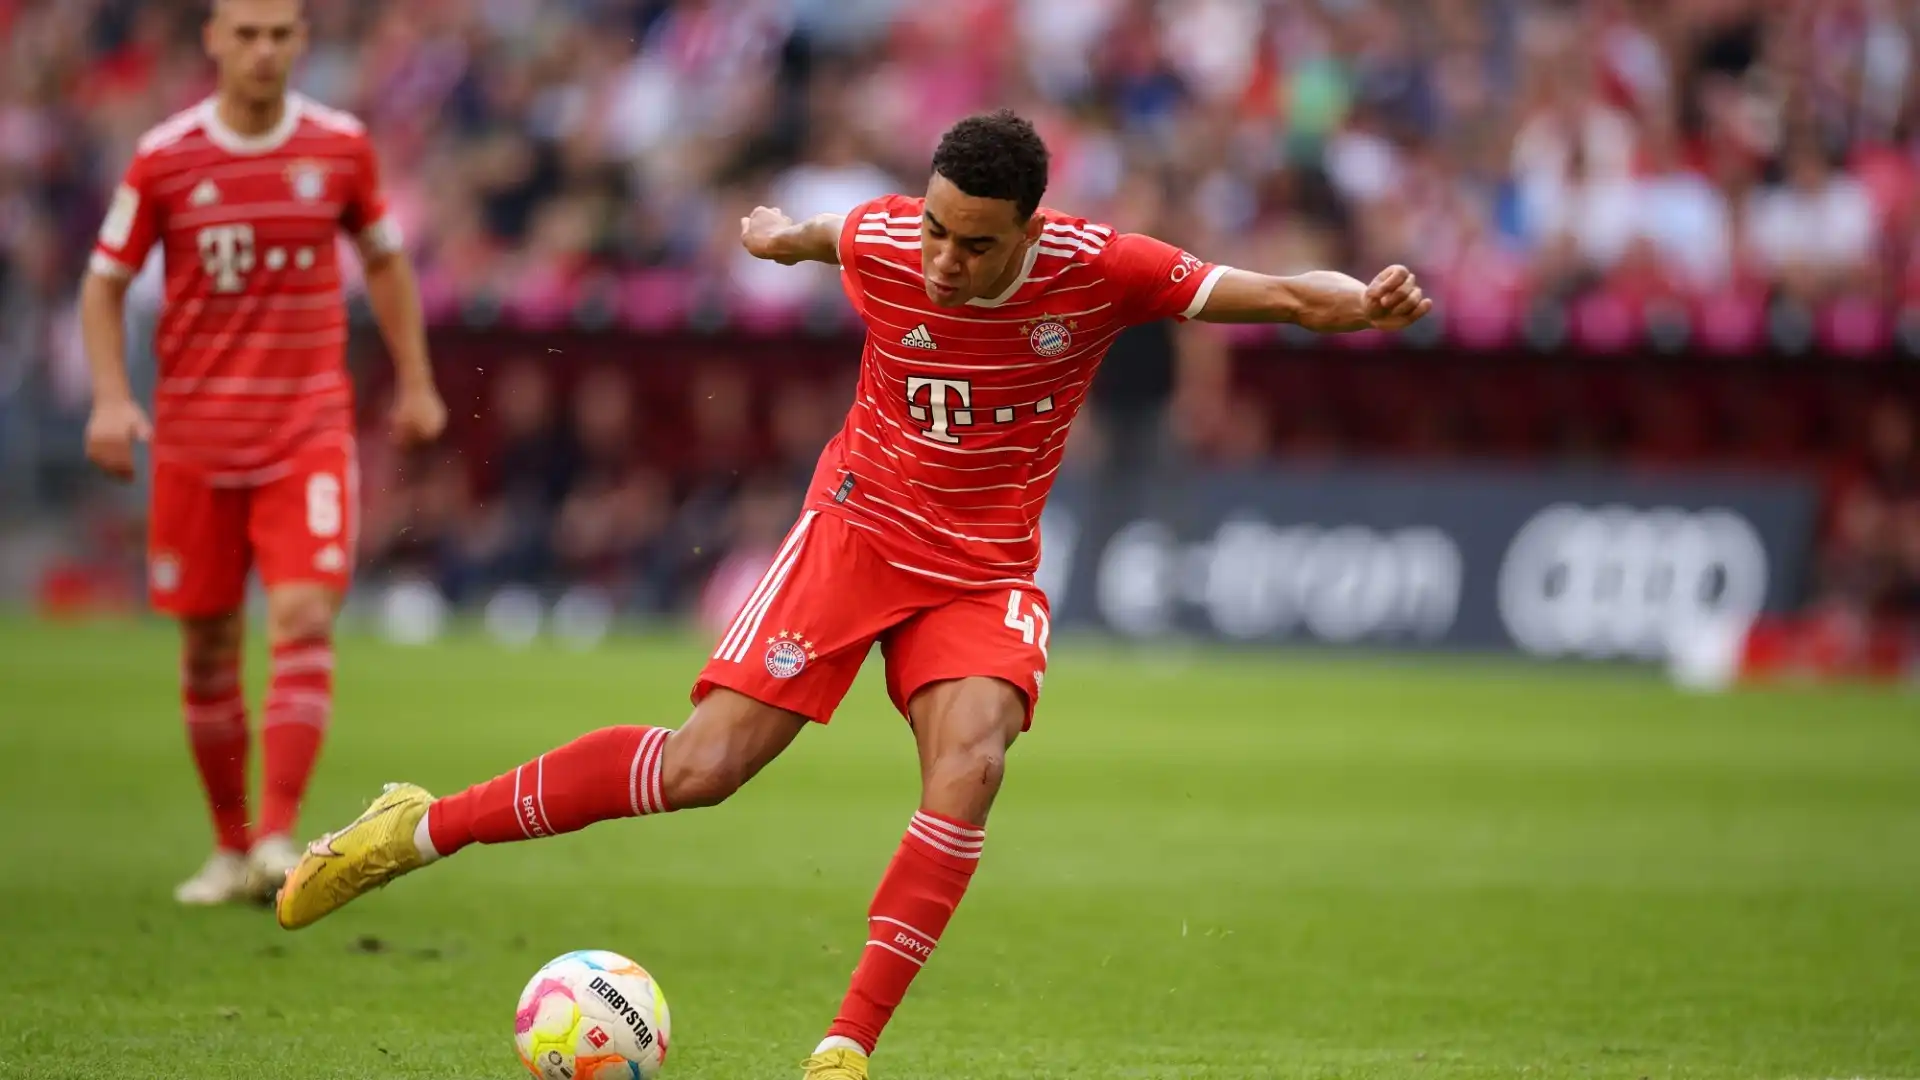 Jamal Musiala (Germania/Bayern Monaco): valore di mercato 110 milioni di euro